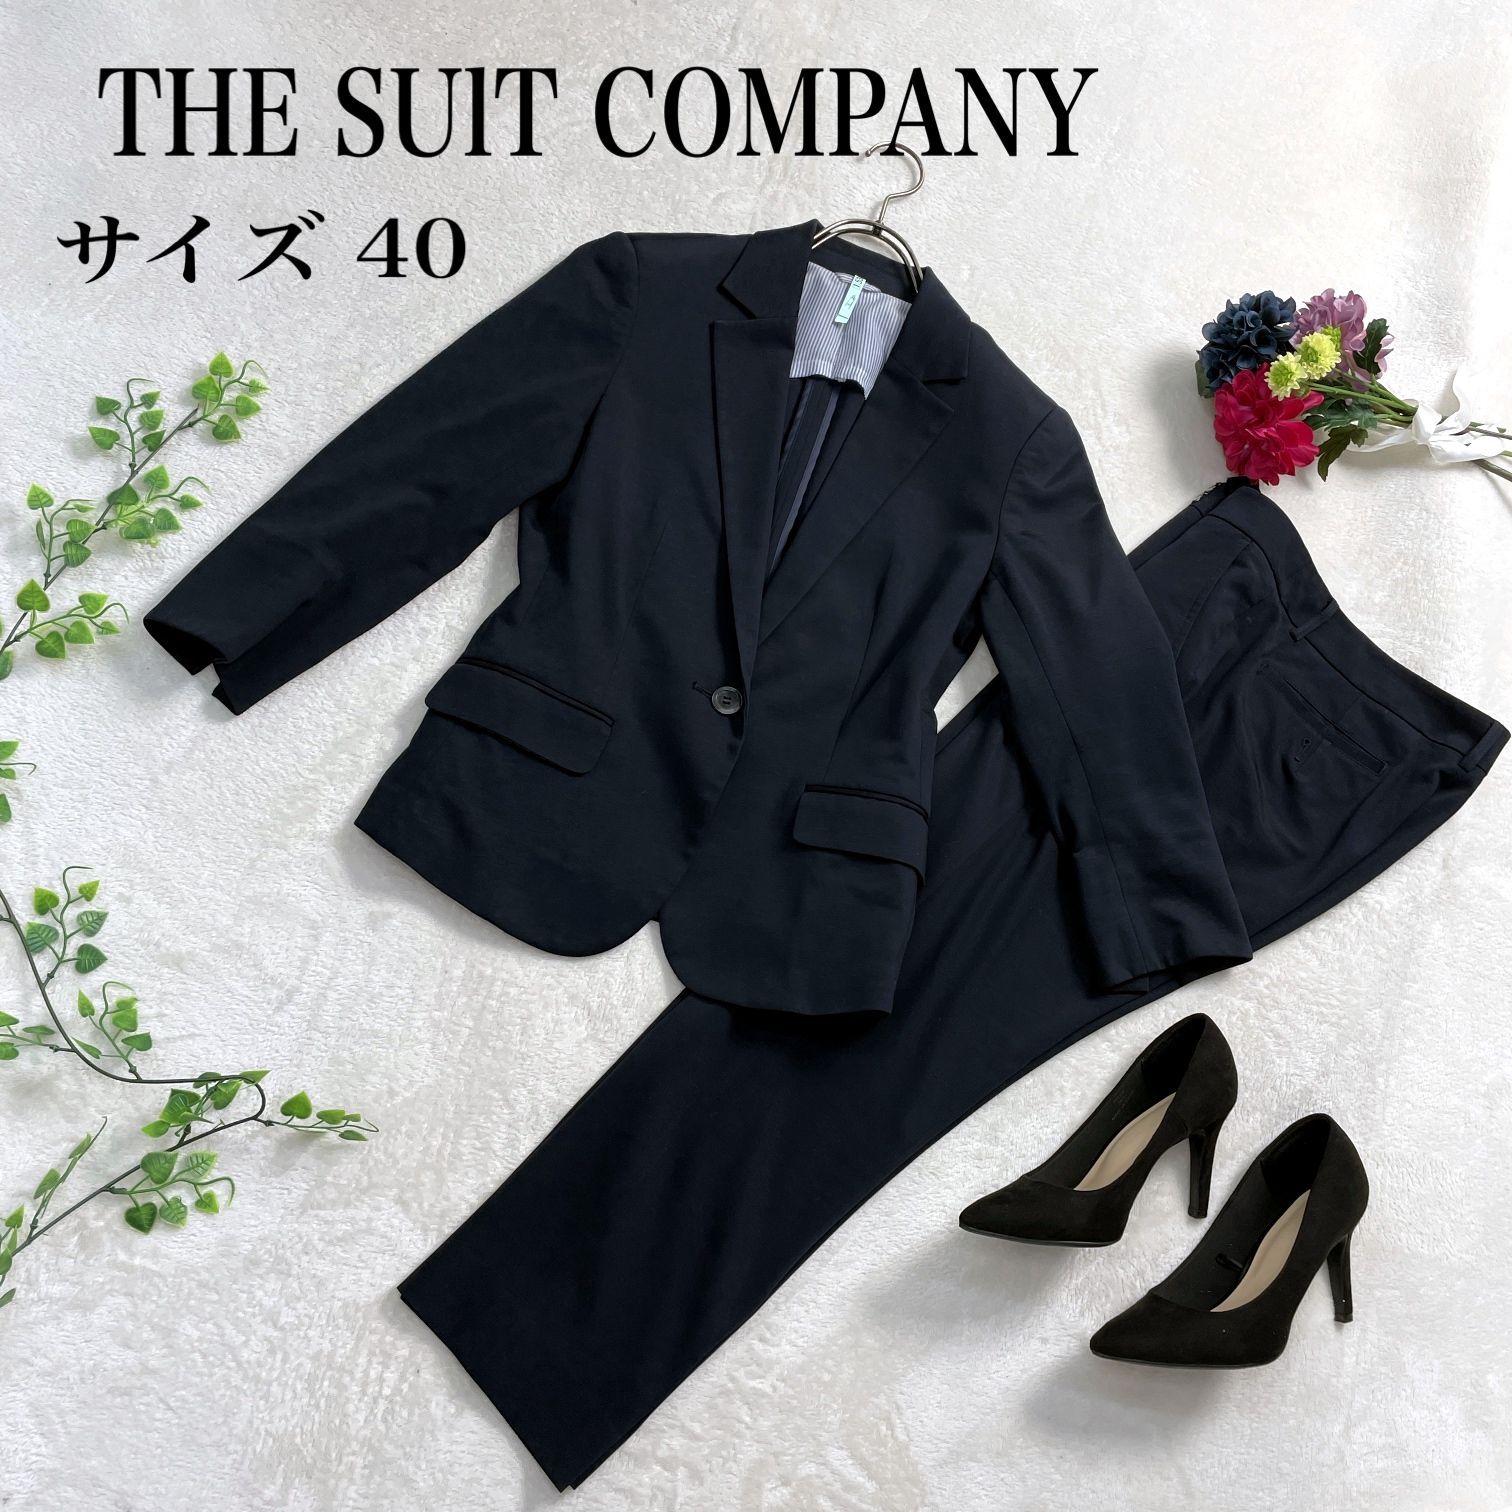 THE SUIT COMPANY スーツカンパニー セットアップ スーツ 春夏 - スーツ